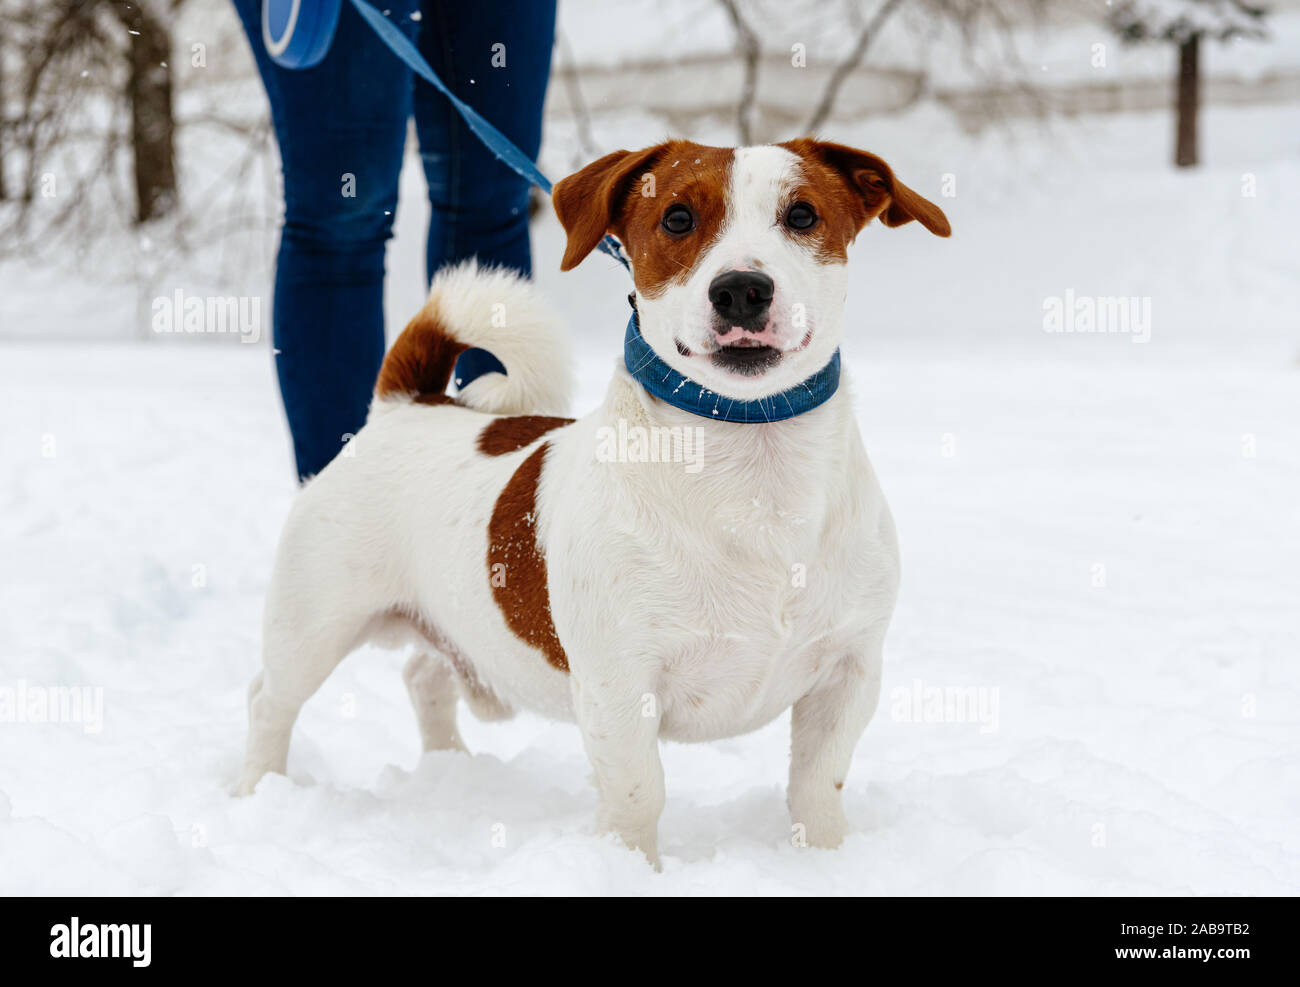 Promenade de chiens sans laisse rétractable sur le comité permanent sur la neige Banque D'Images